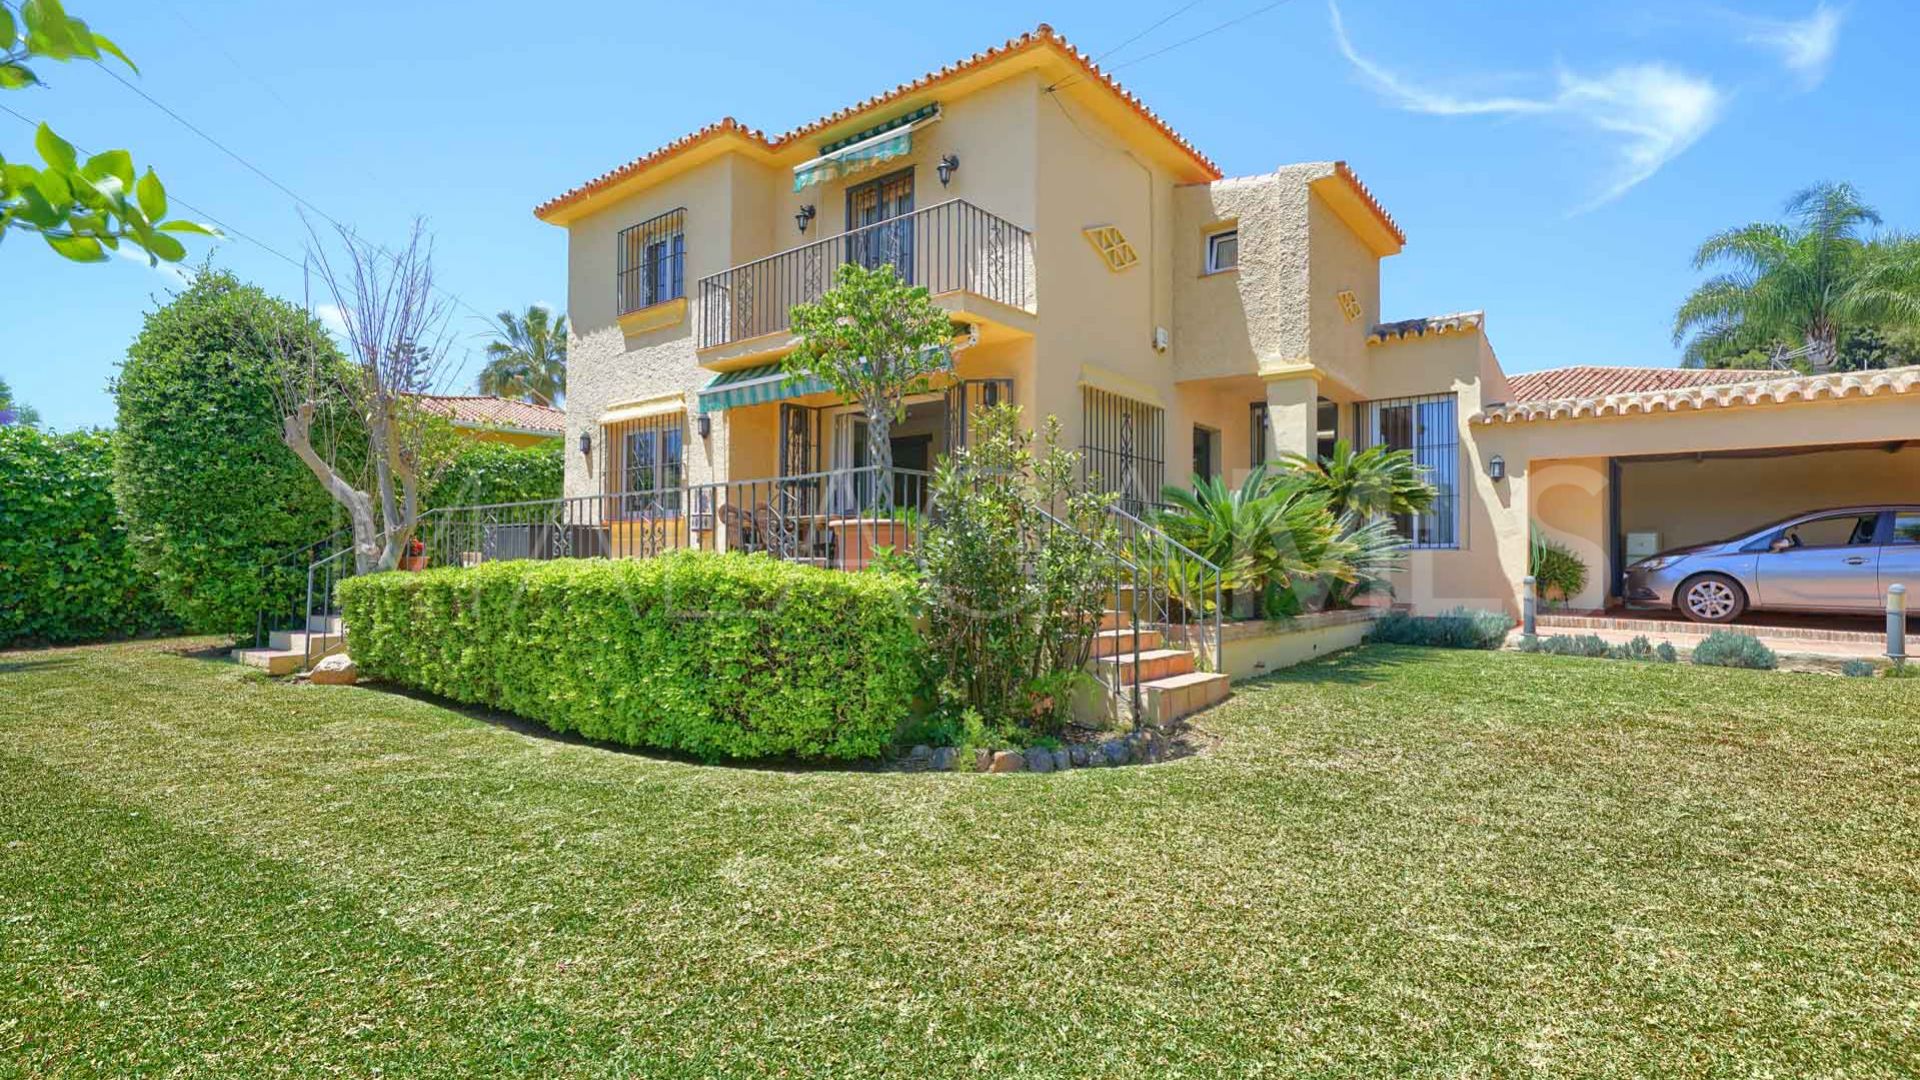 For sale El Mirador villa with 3 bedrooms